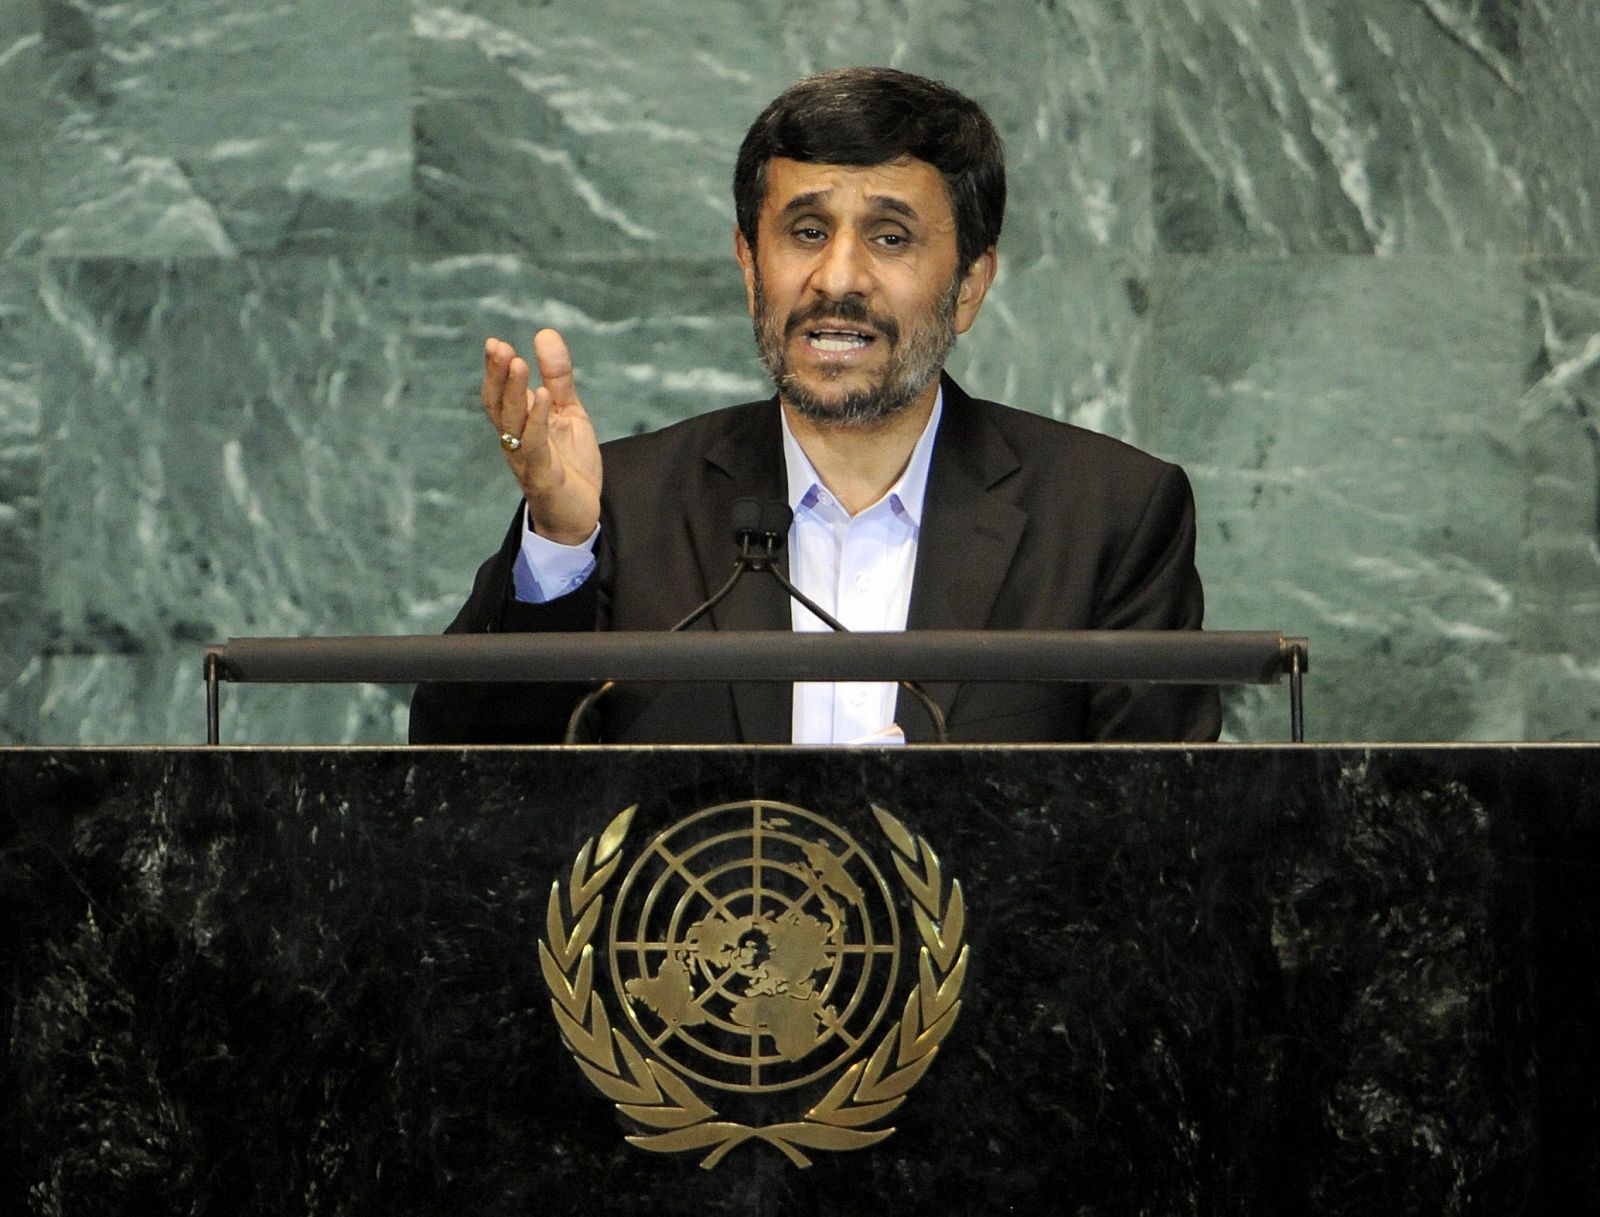 El presidente de Irán, Mahmoud Ahmadinejad, habla en el inicio de los debates de la 65 Asamblea General de las Naciones Unidas en Nueva York.